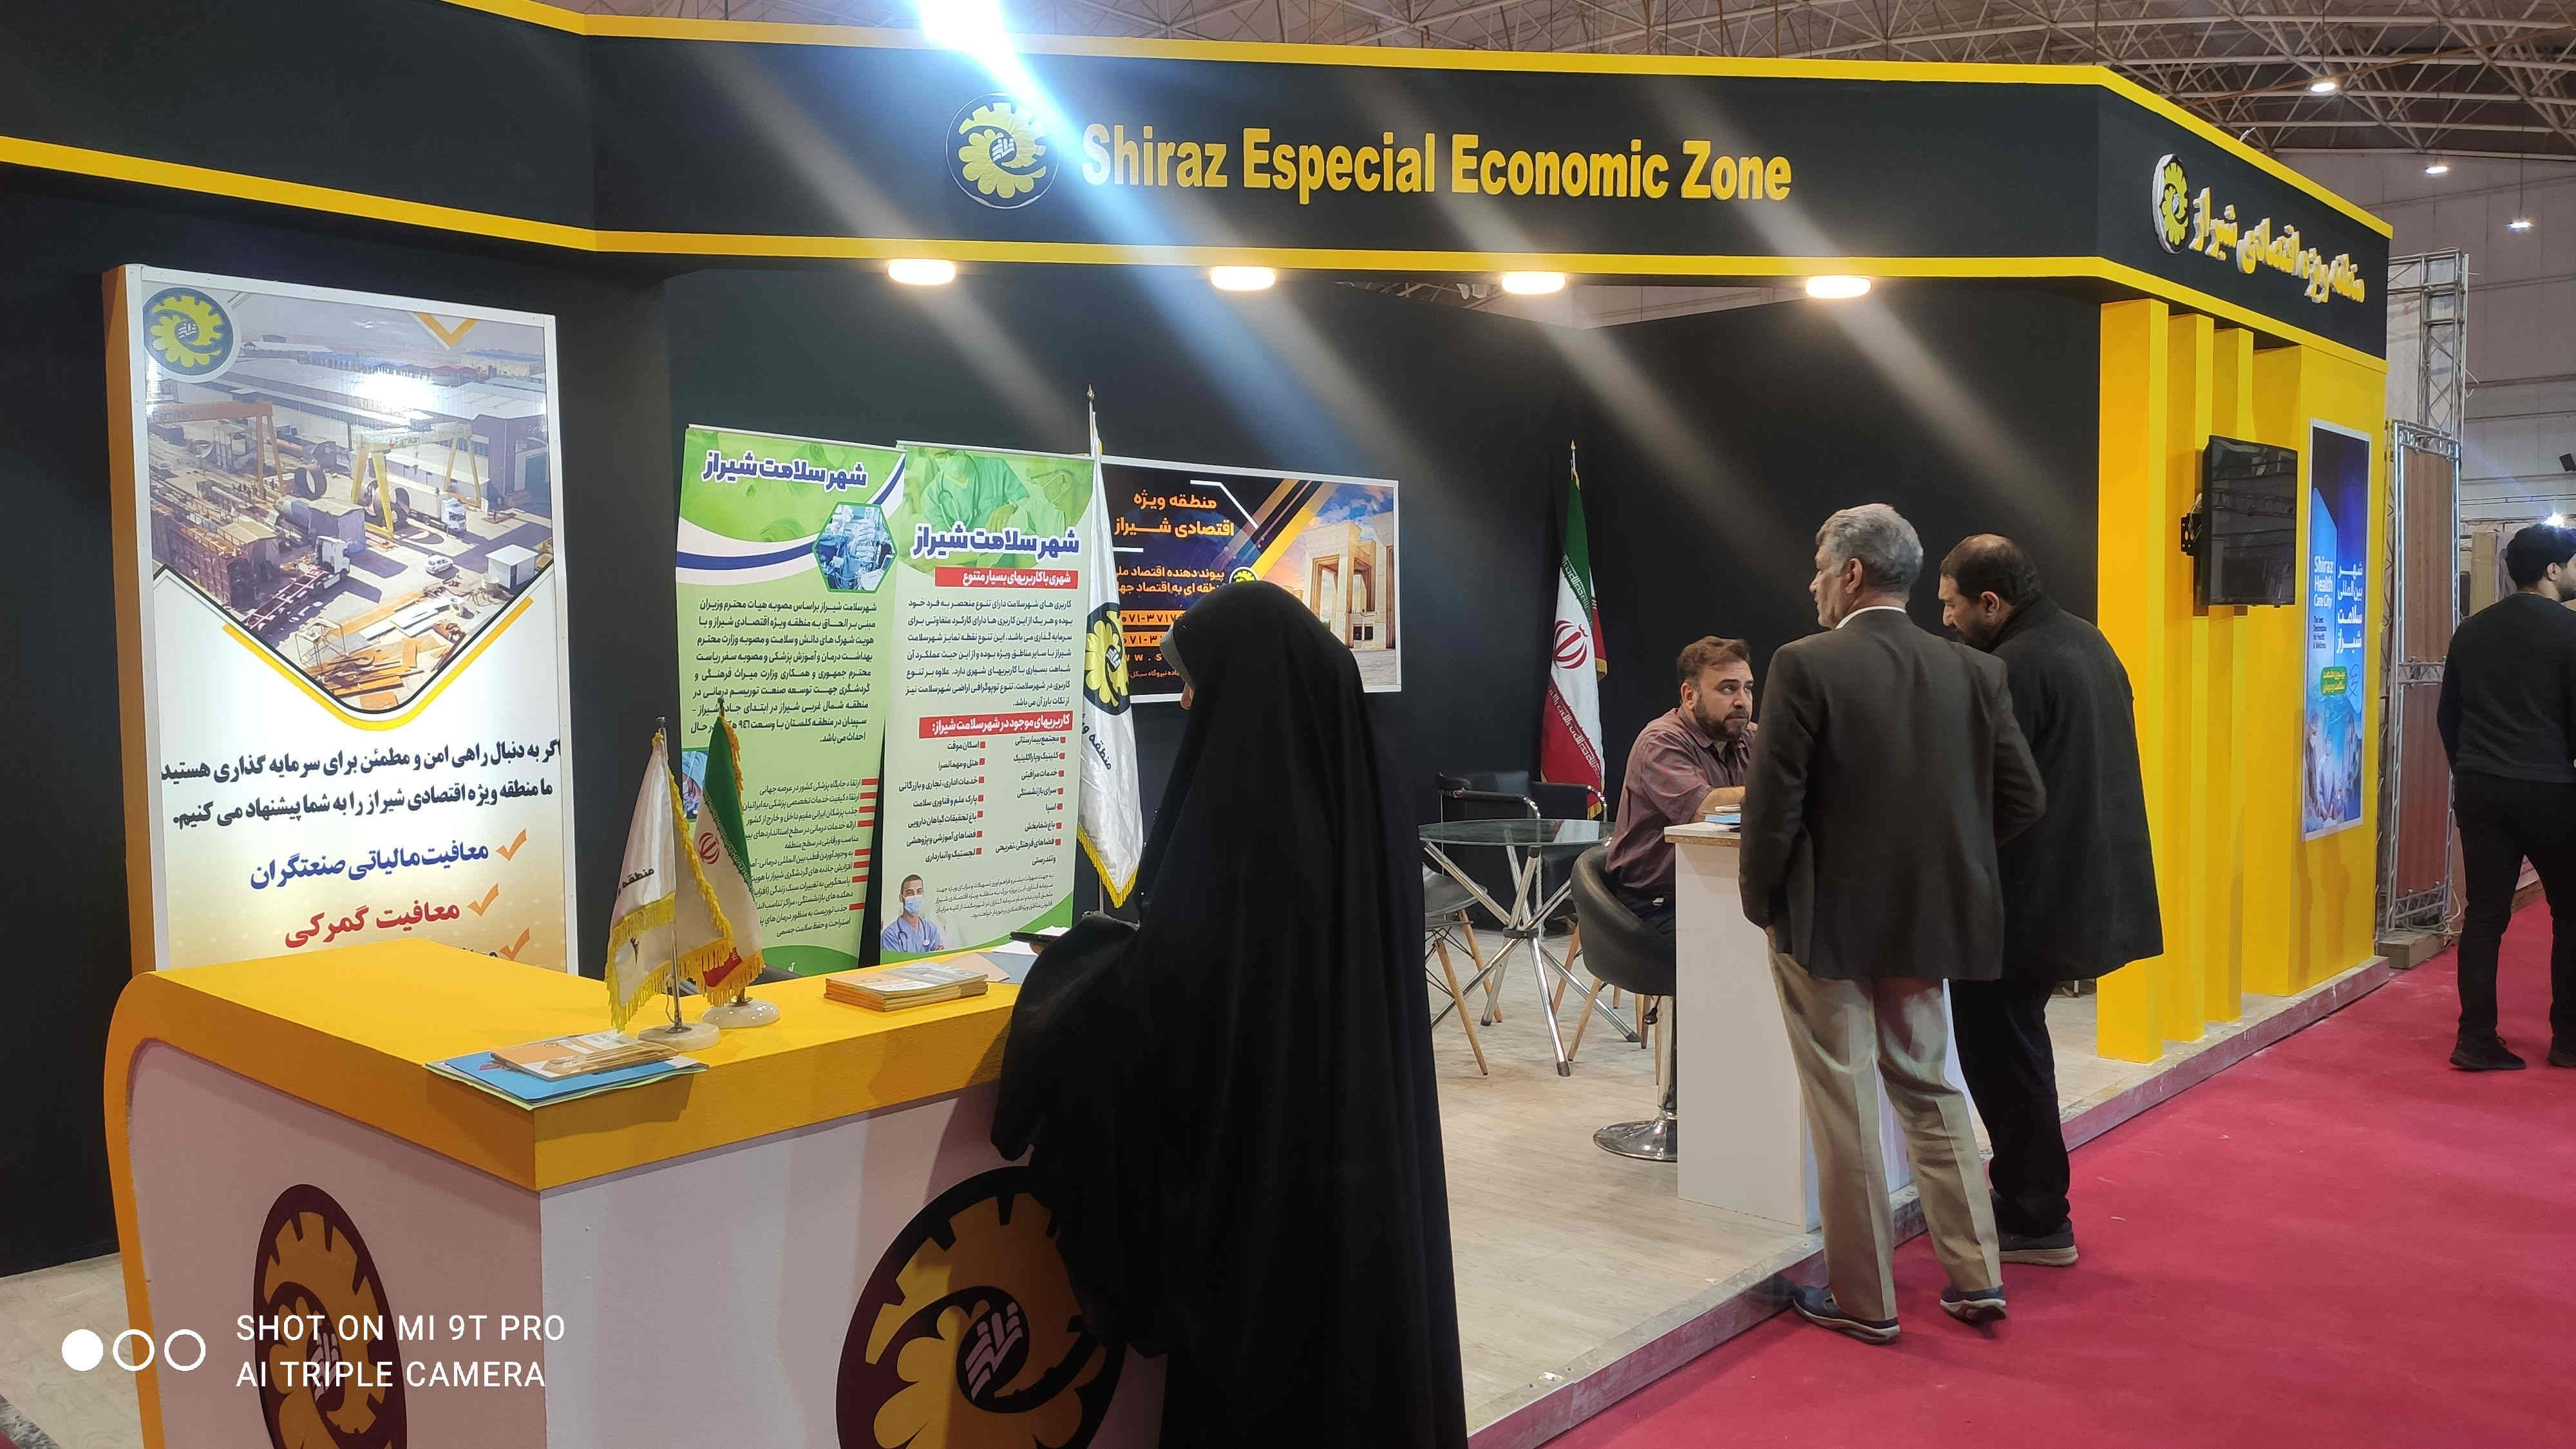 حضور فعال منطقه ویژه اقتصادی شیراز و شهر سلامت در نمایشگاه گردشگری پارس